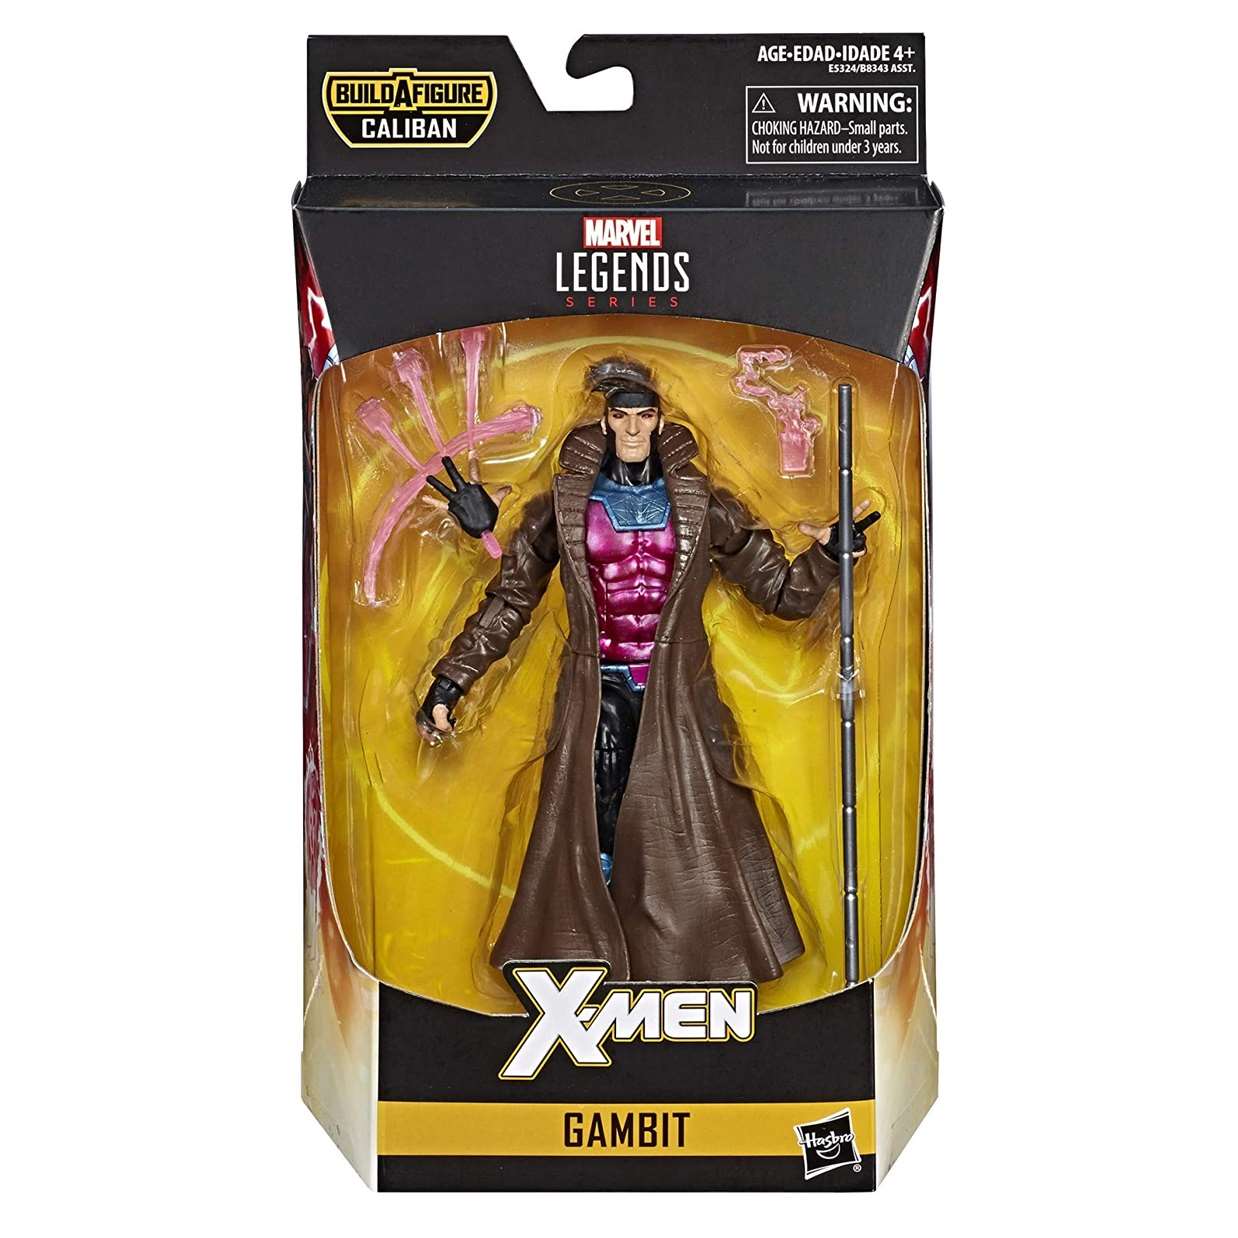 Gambit Figura Marvel B A F Caliban X Men Legends 6 Pulg